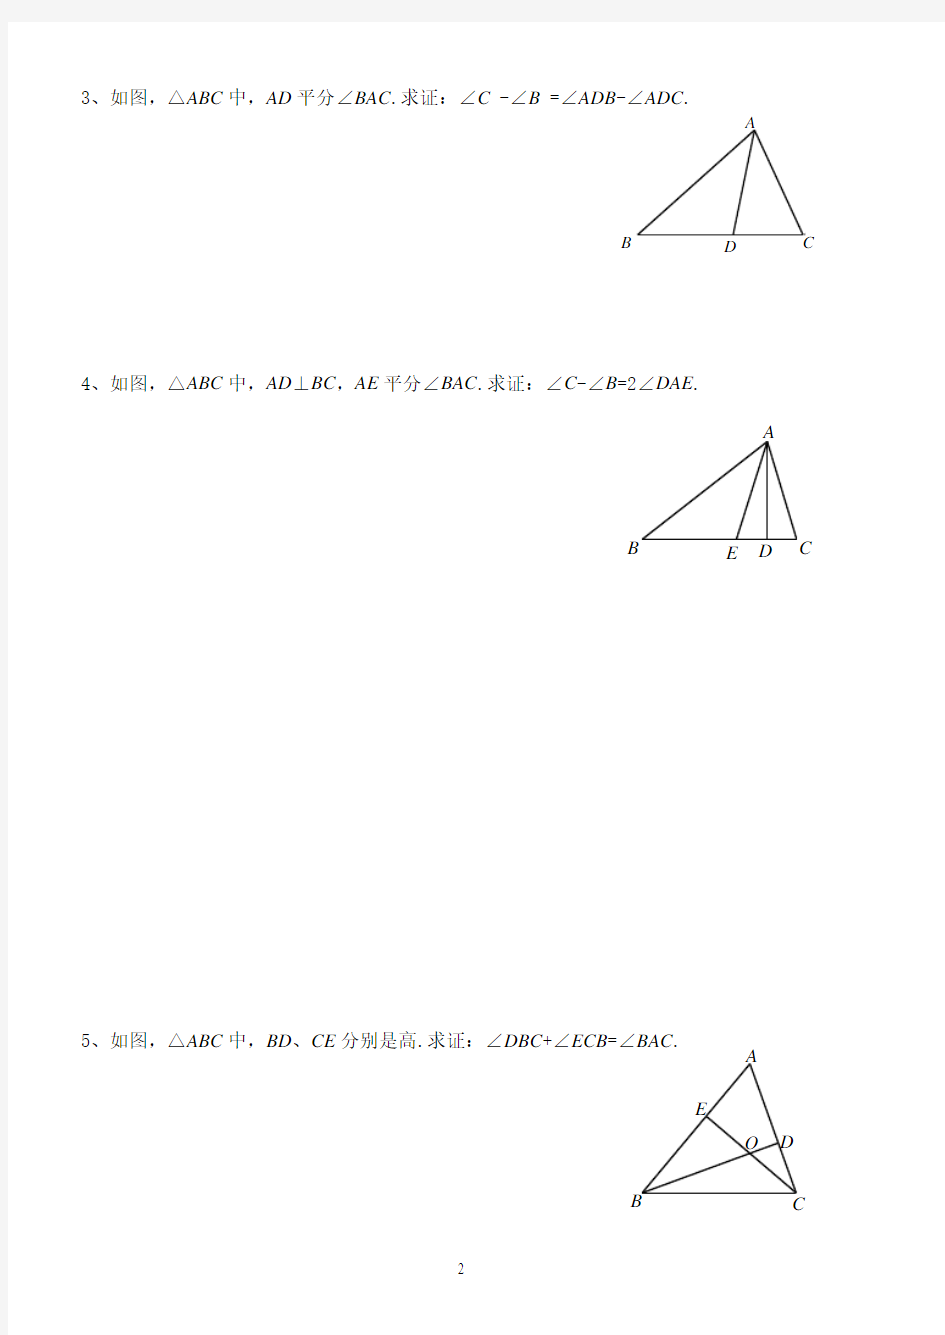 三角形基本图形结论证明